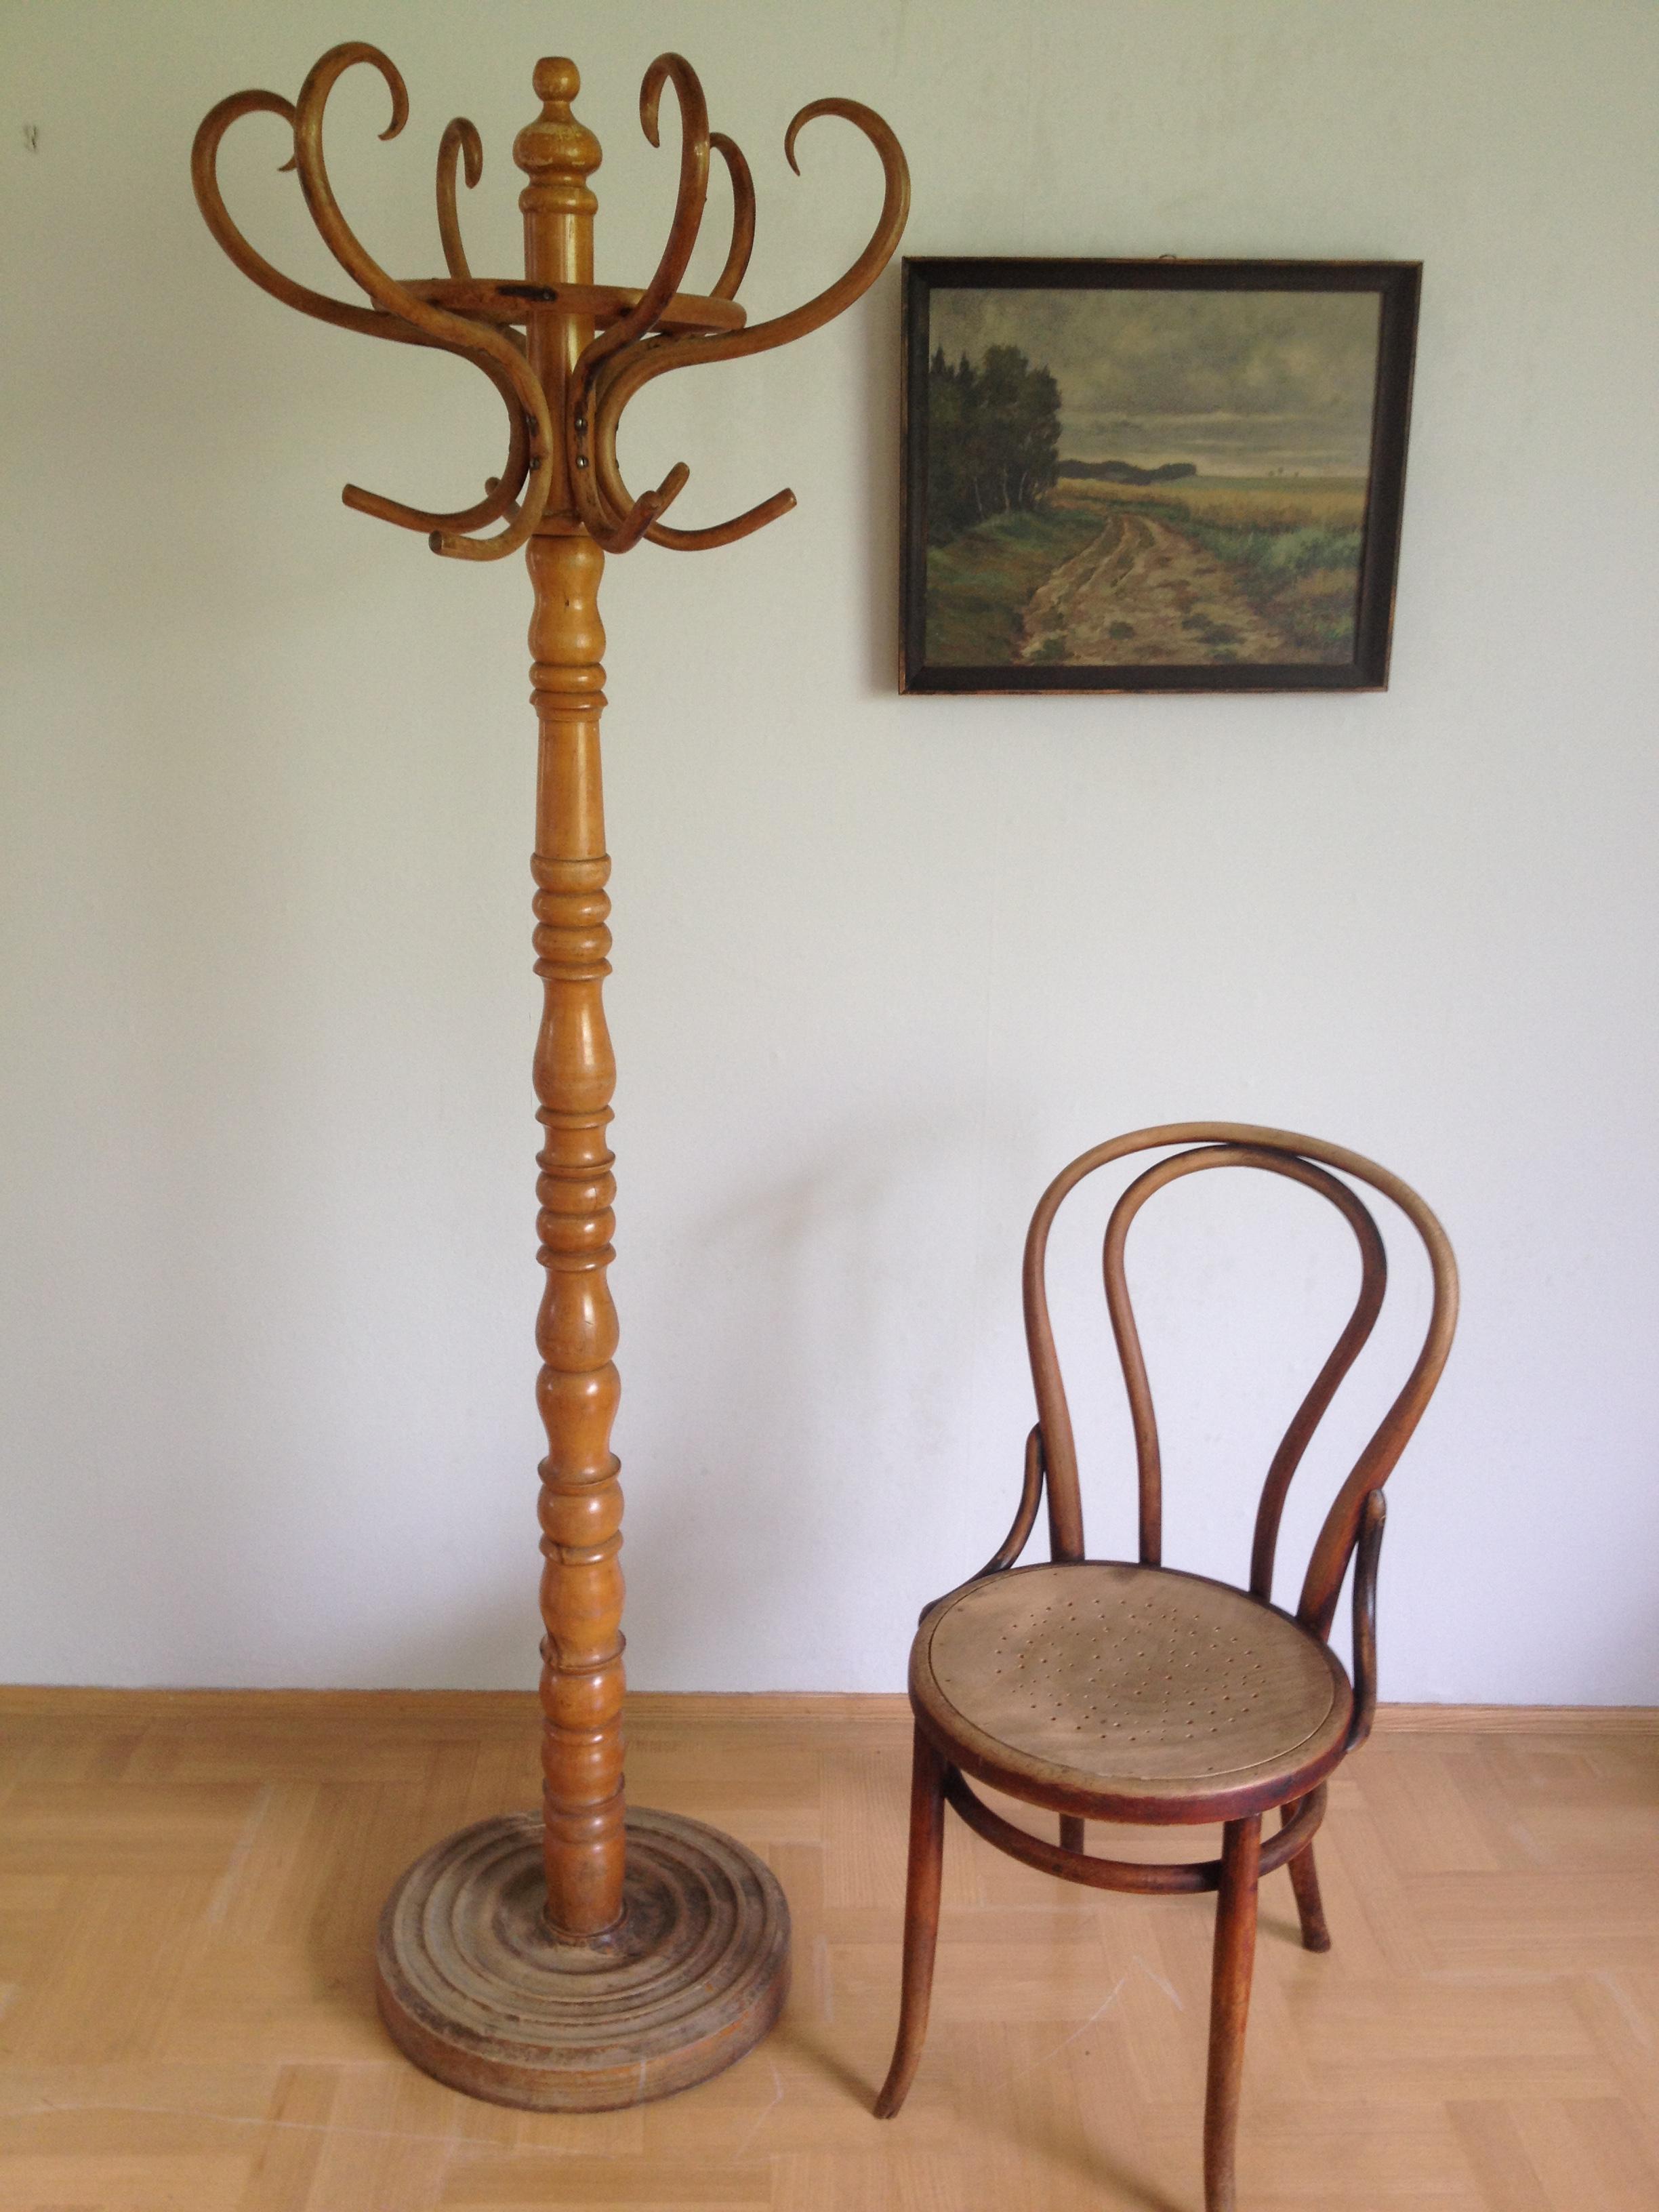 Einzigartig, Säule gedrechselt, Haken aus Bugholz, h 185 cm, b 55 cm, Sessel separat erhältlich